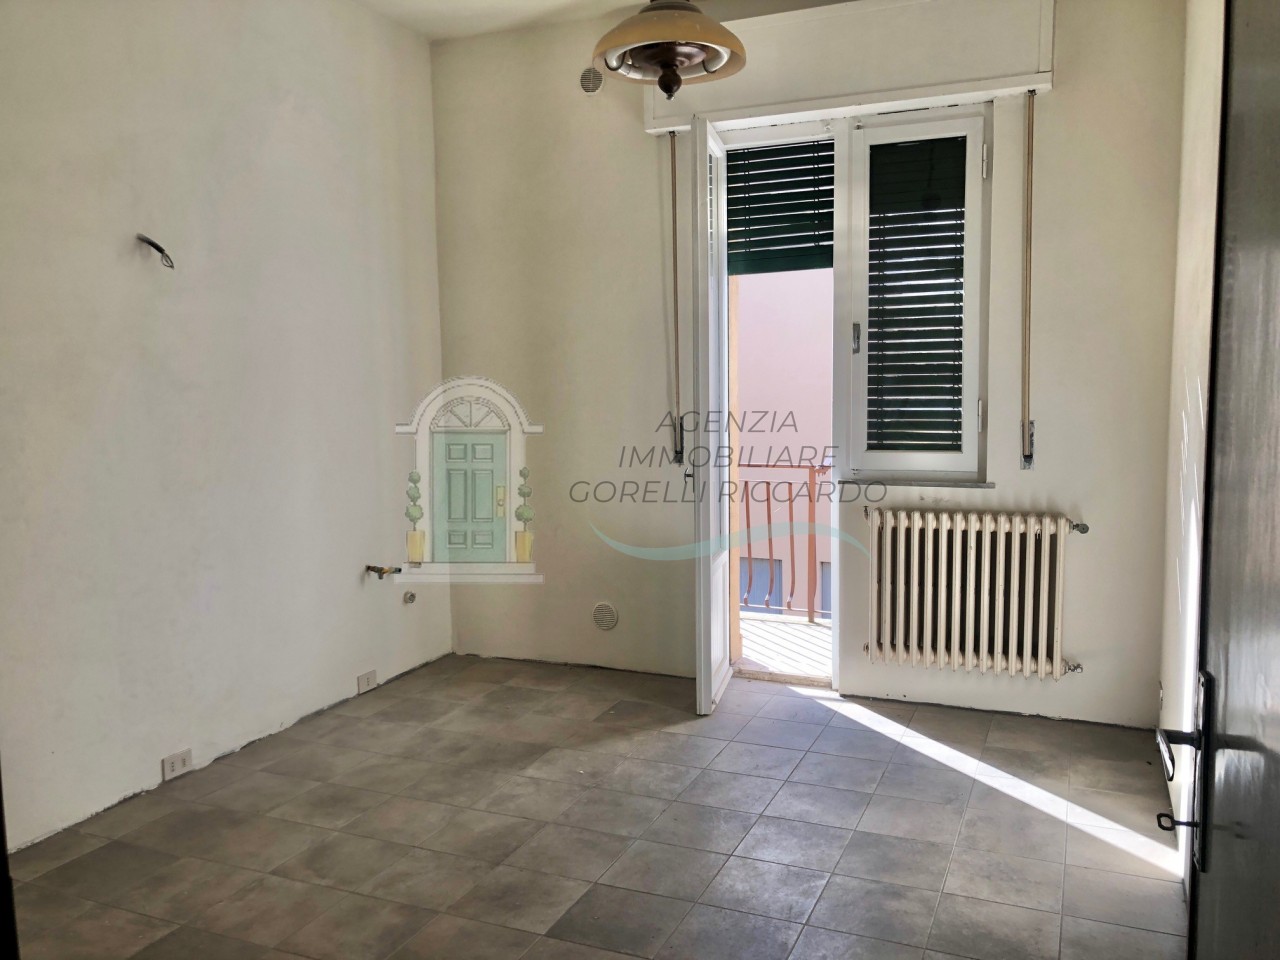 Appartamento in vendita a Colle di Val d'Elsa, 4 locali, prezzo € 160.000 | PortaleAgenzieImmobiliari.it